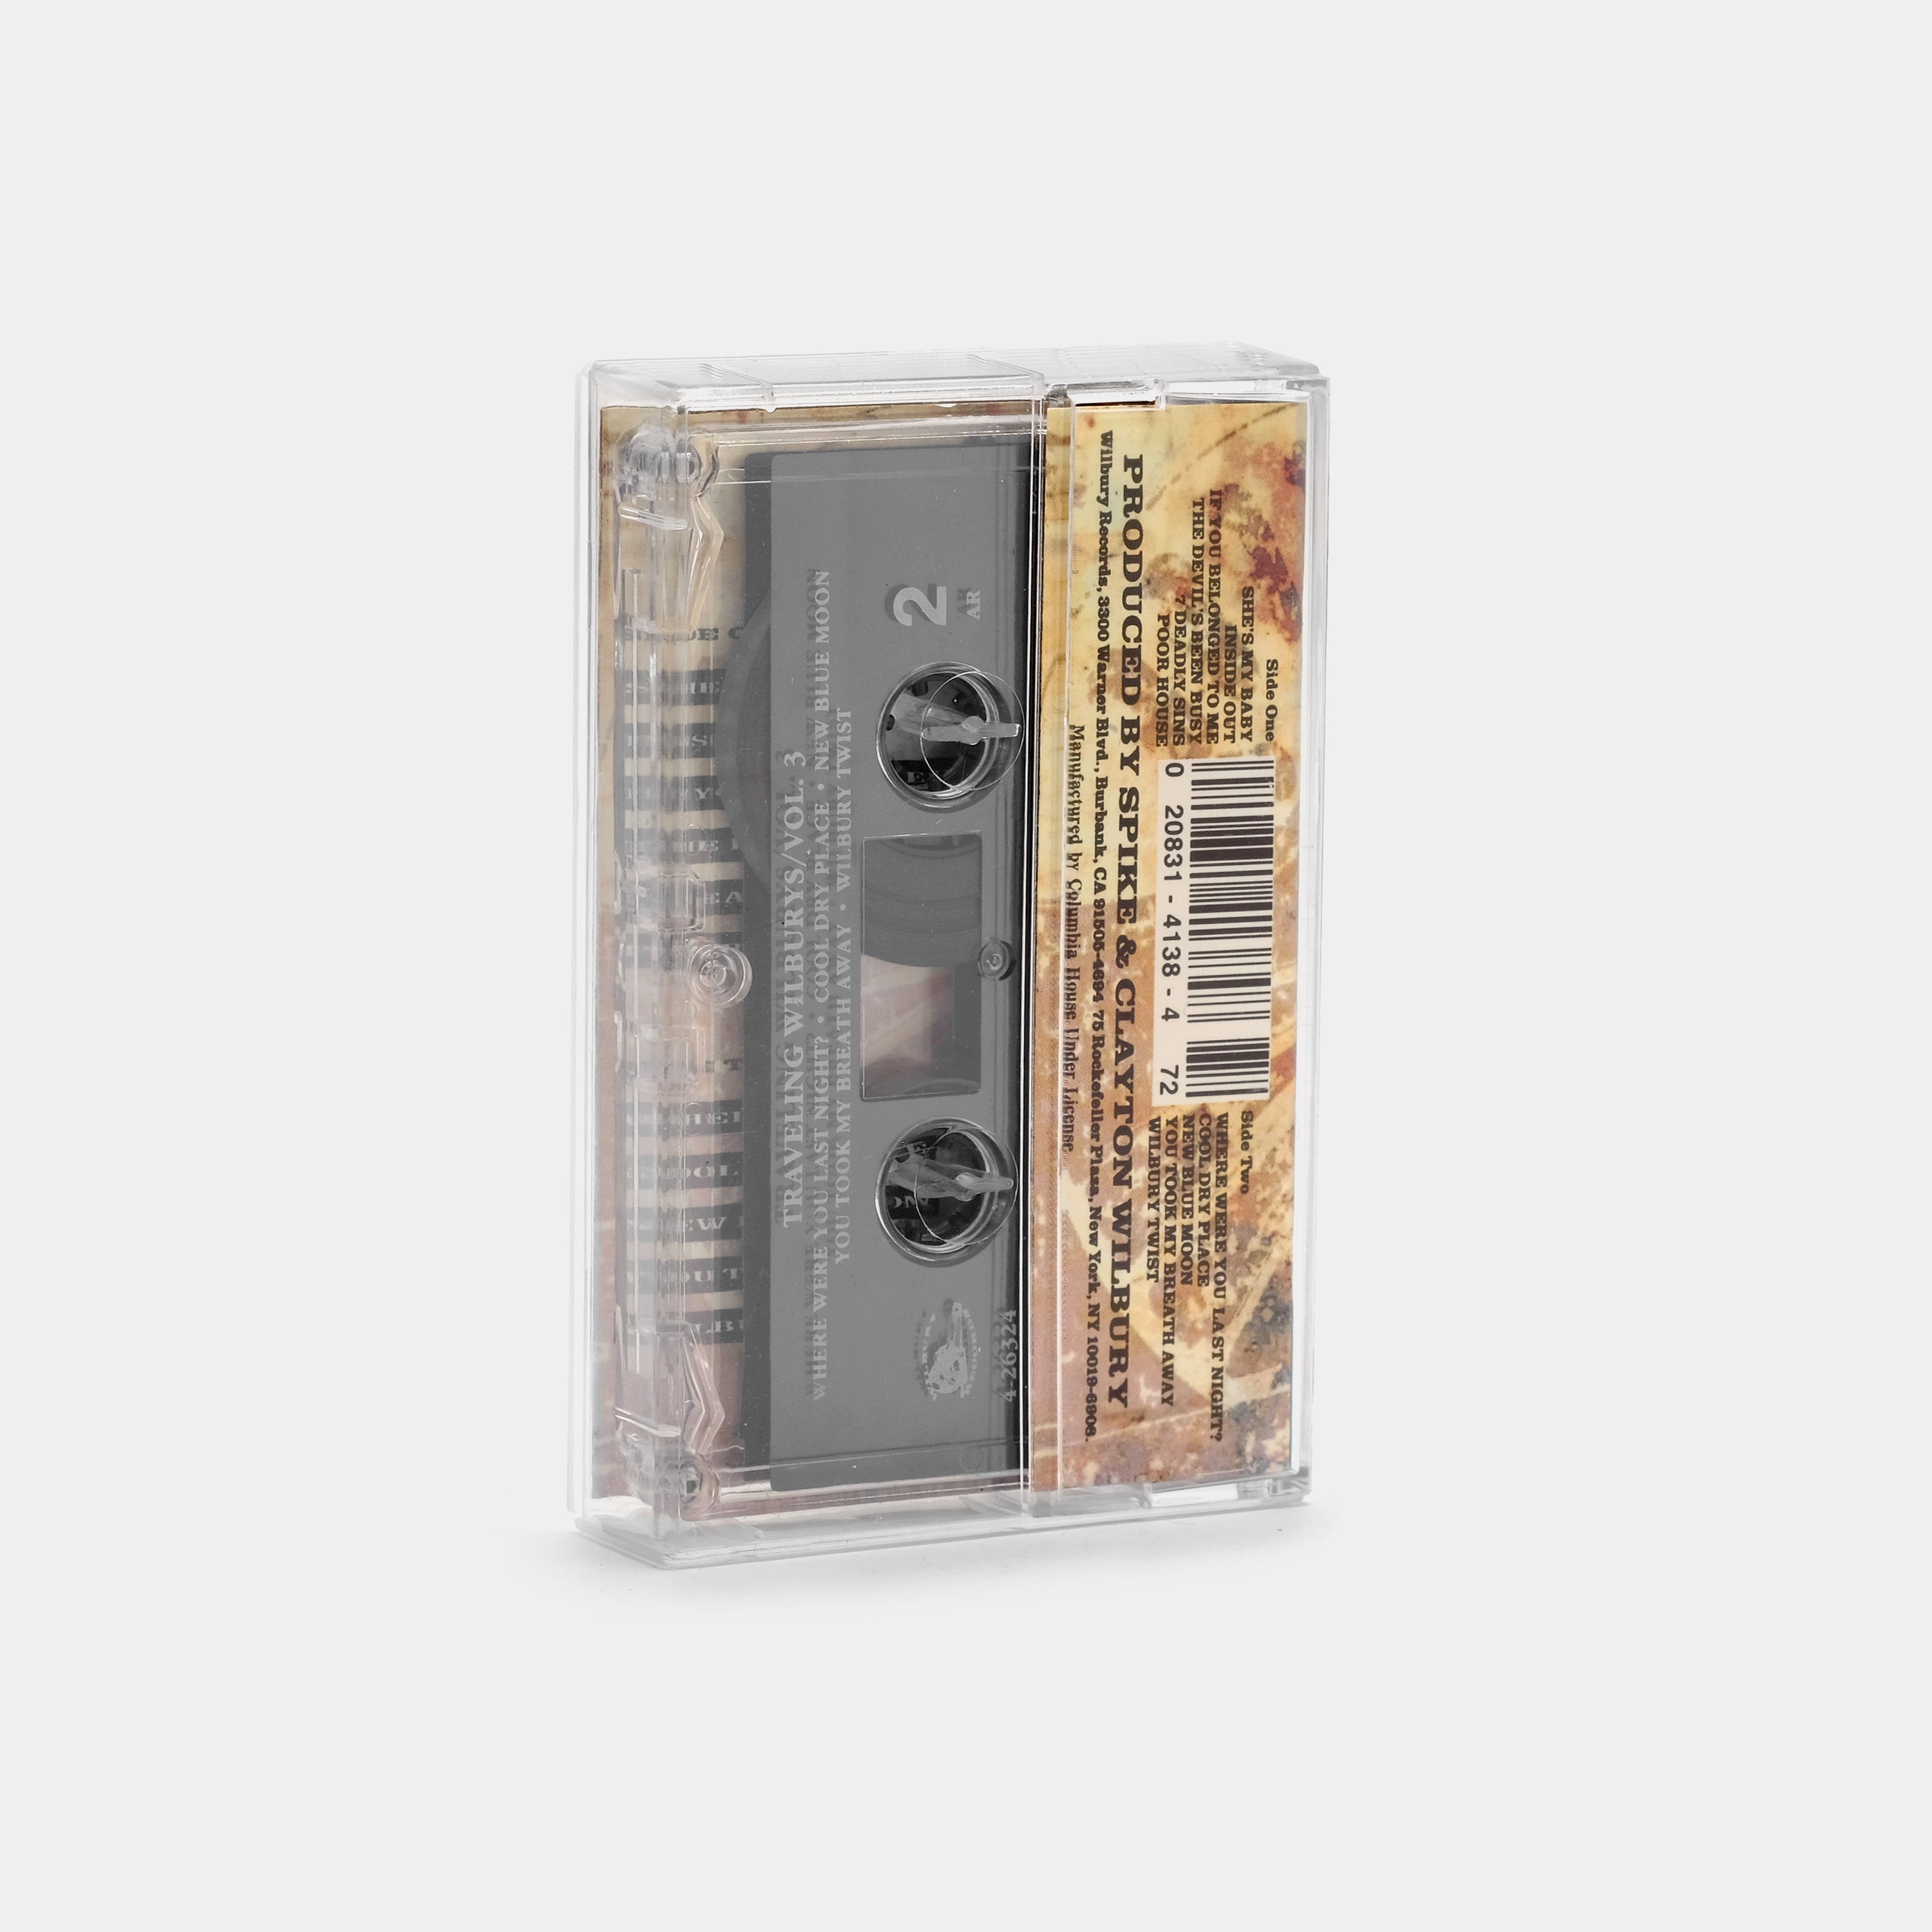 Traveling Wilburys - Vol. 3 Cassette Tape